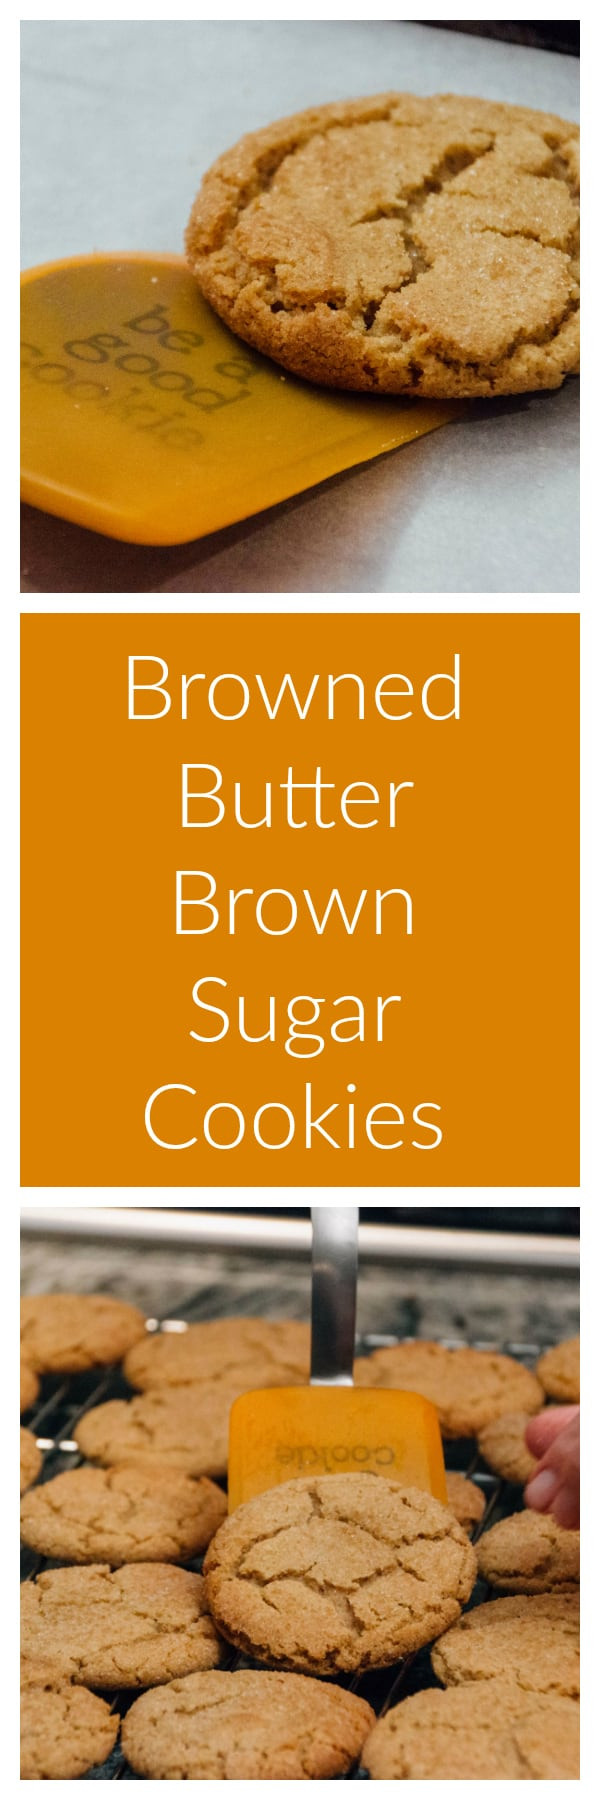 Brown Sugar Butter Cookies
 Browned Butter Dark Brown Sugar Cookies That Susan Williams